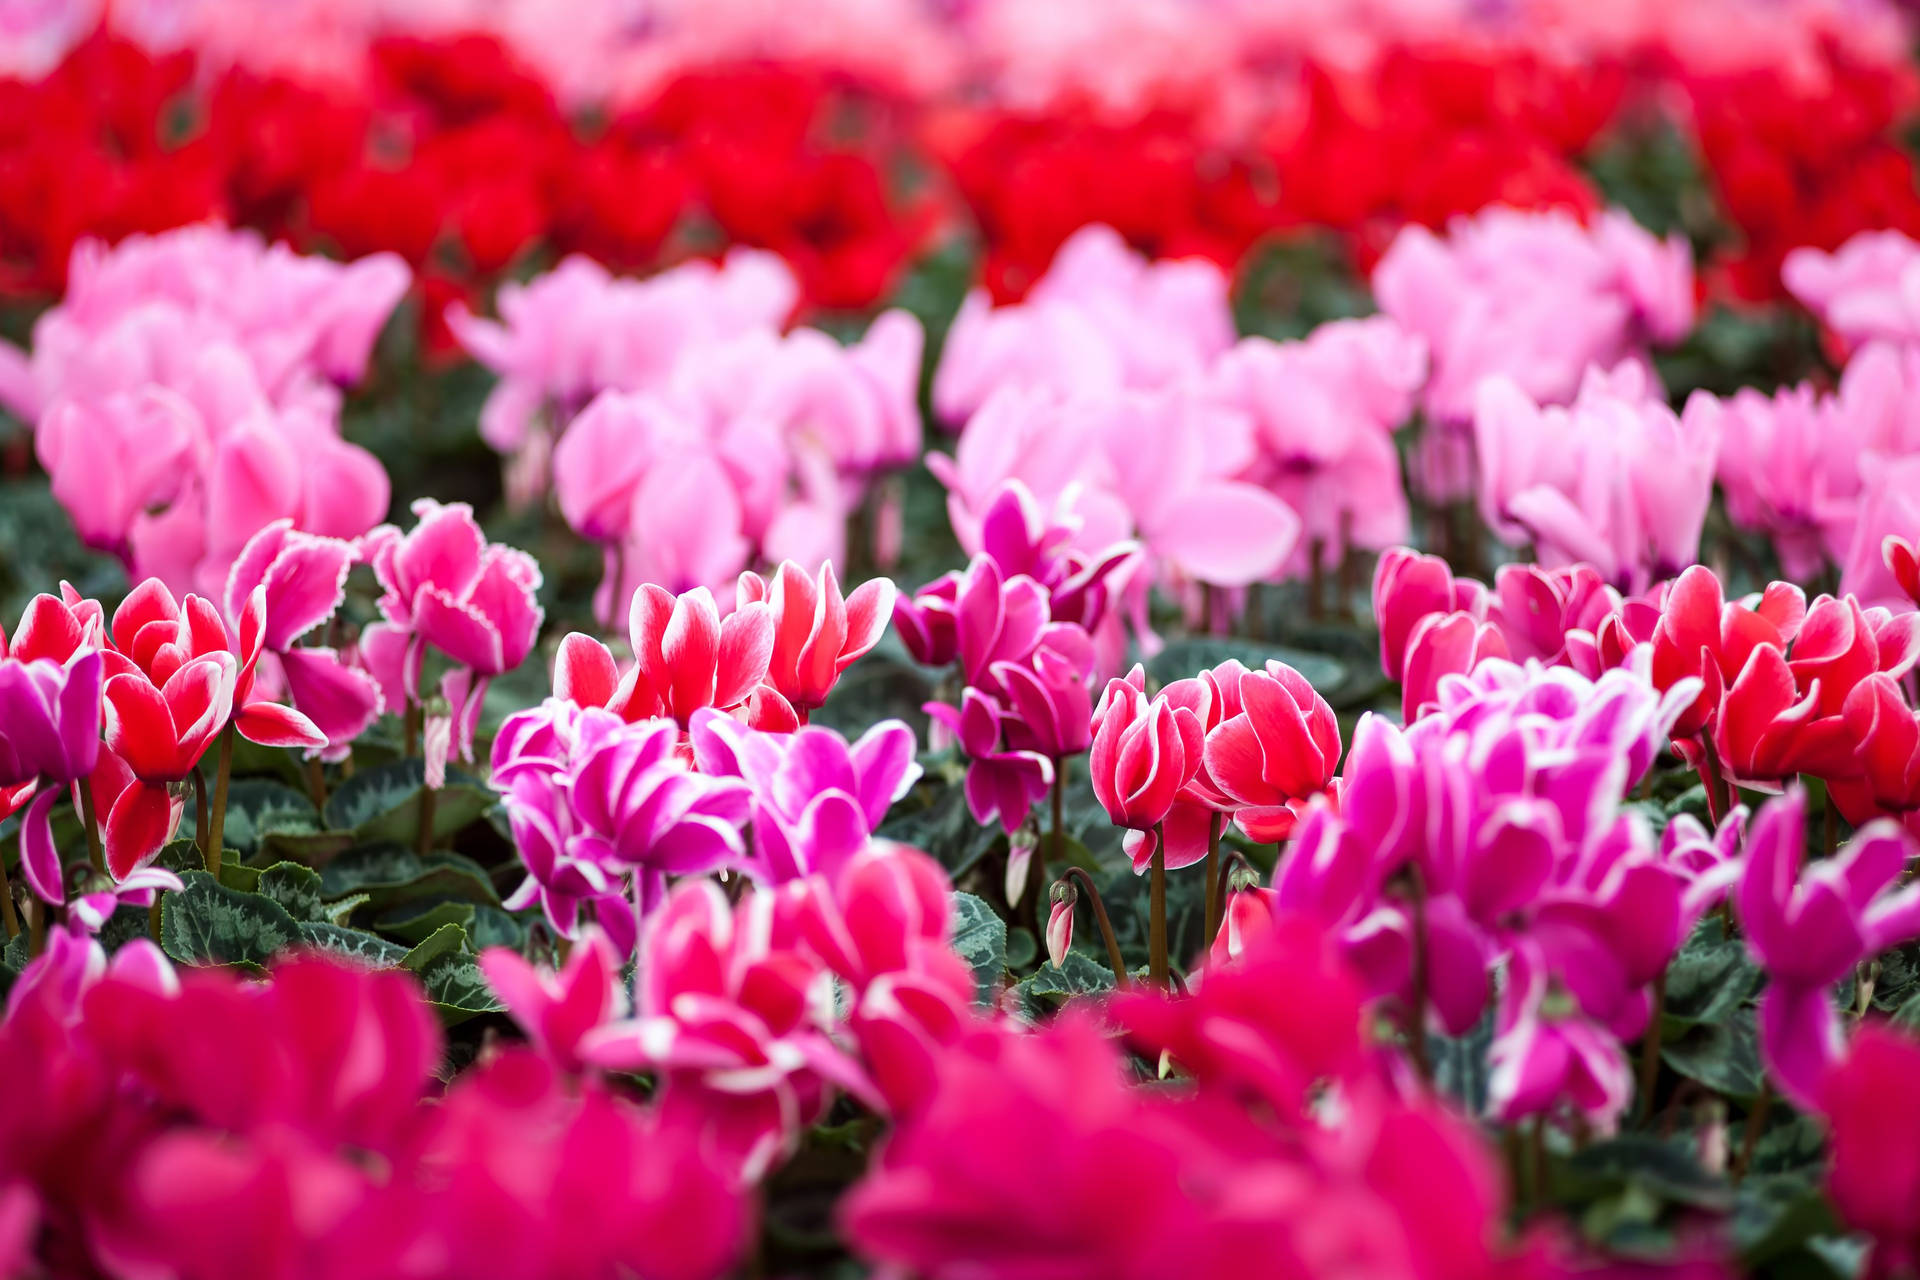 Cyclamen Perennial Garden temaer et landskab fuld af de smukkeste, friske farver. Wallpaper